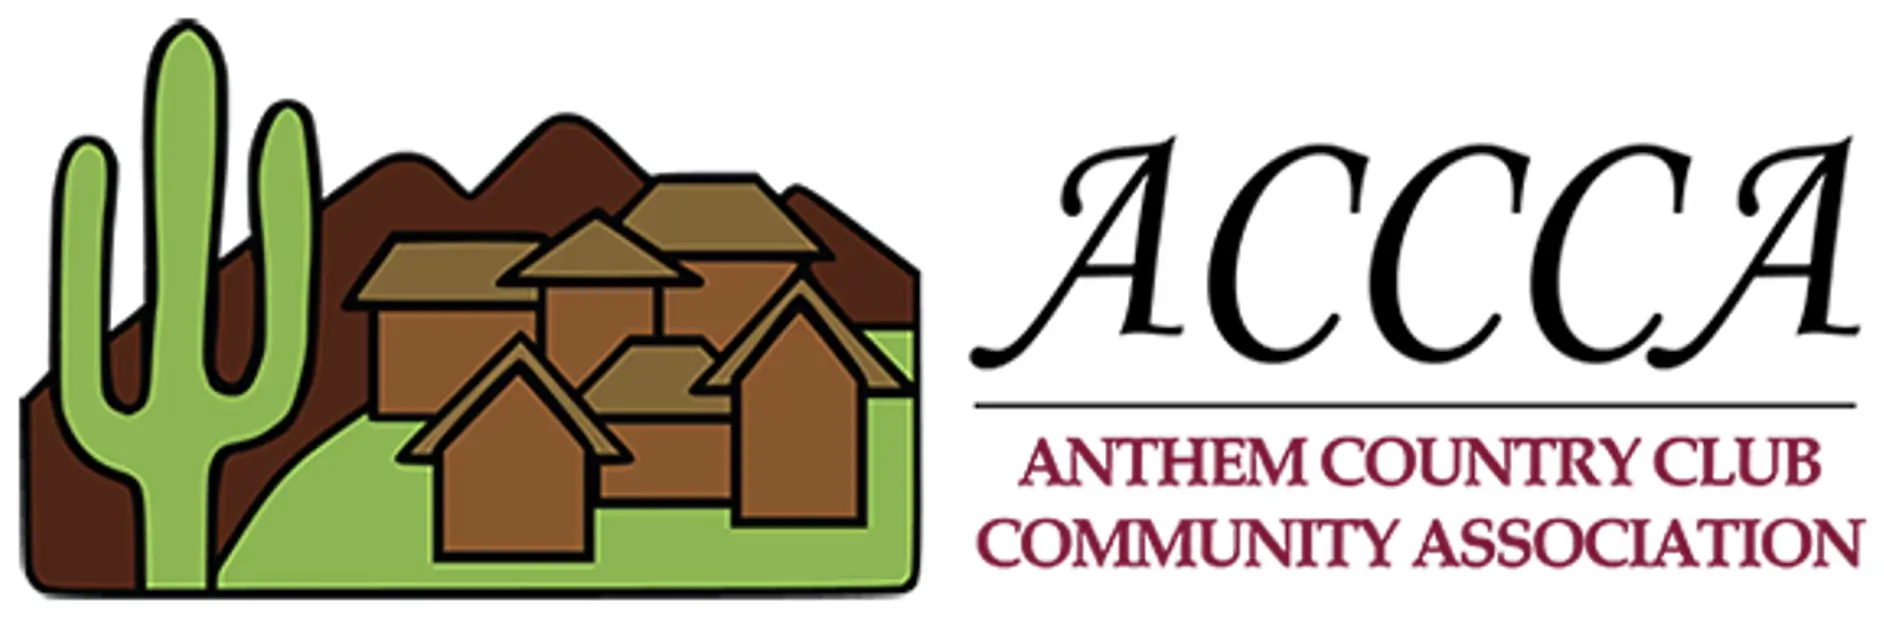 Accc-logo